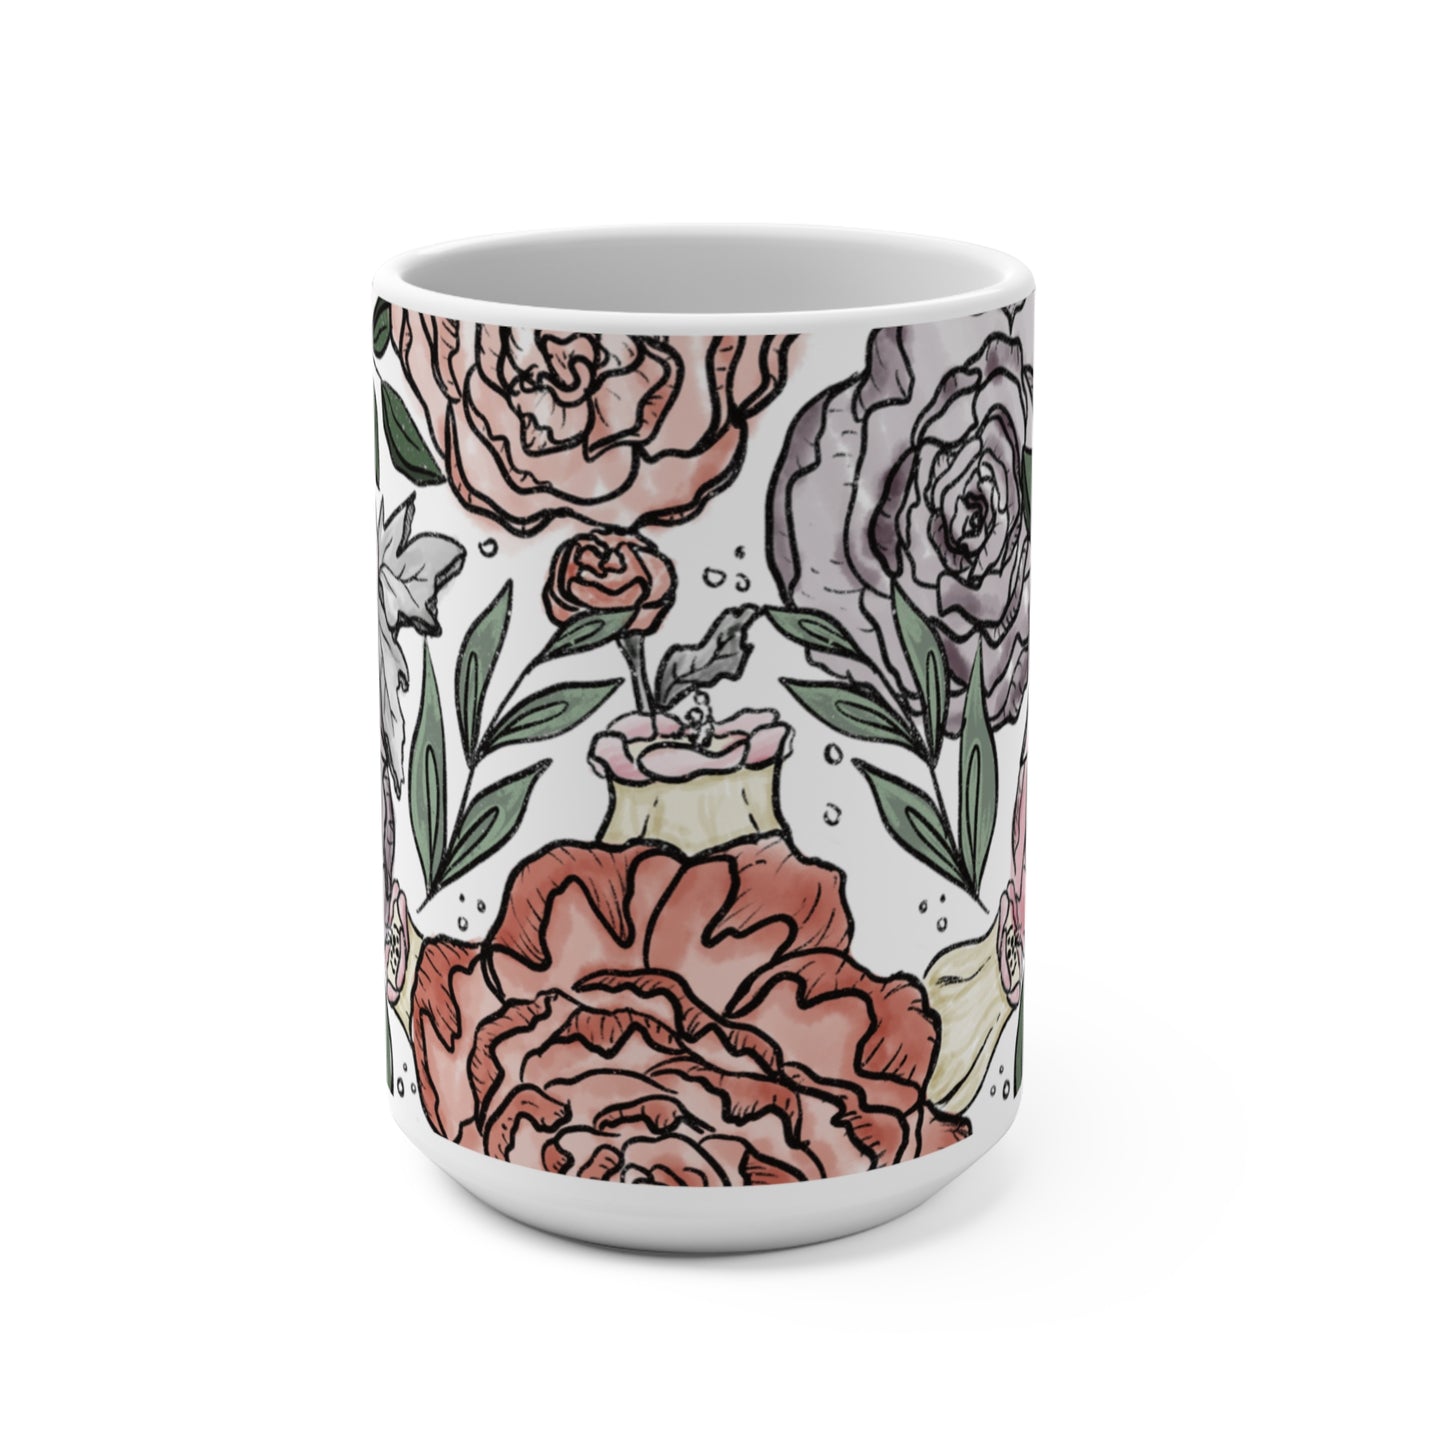 Watercolor flower mug